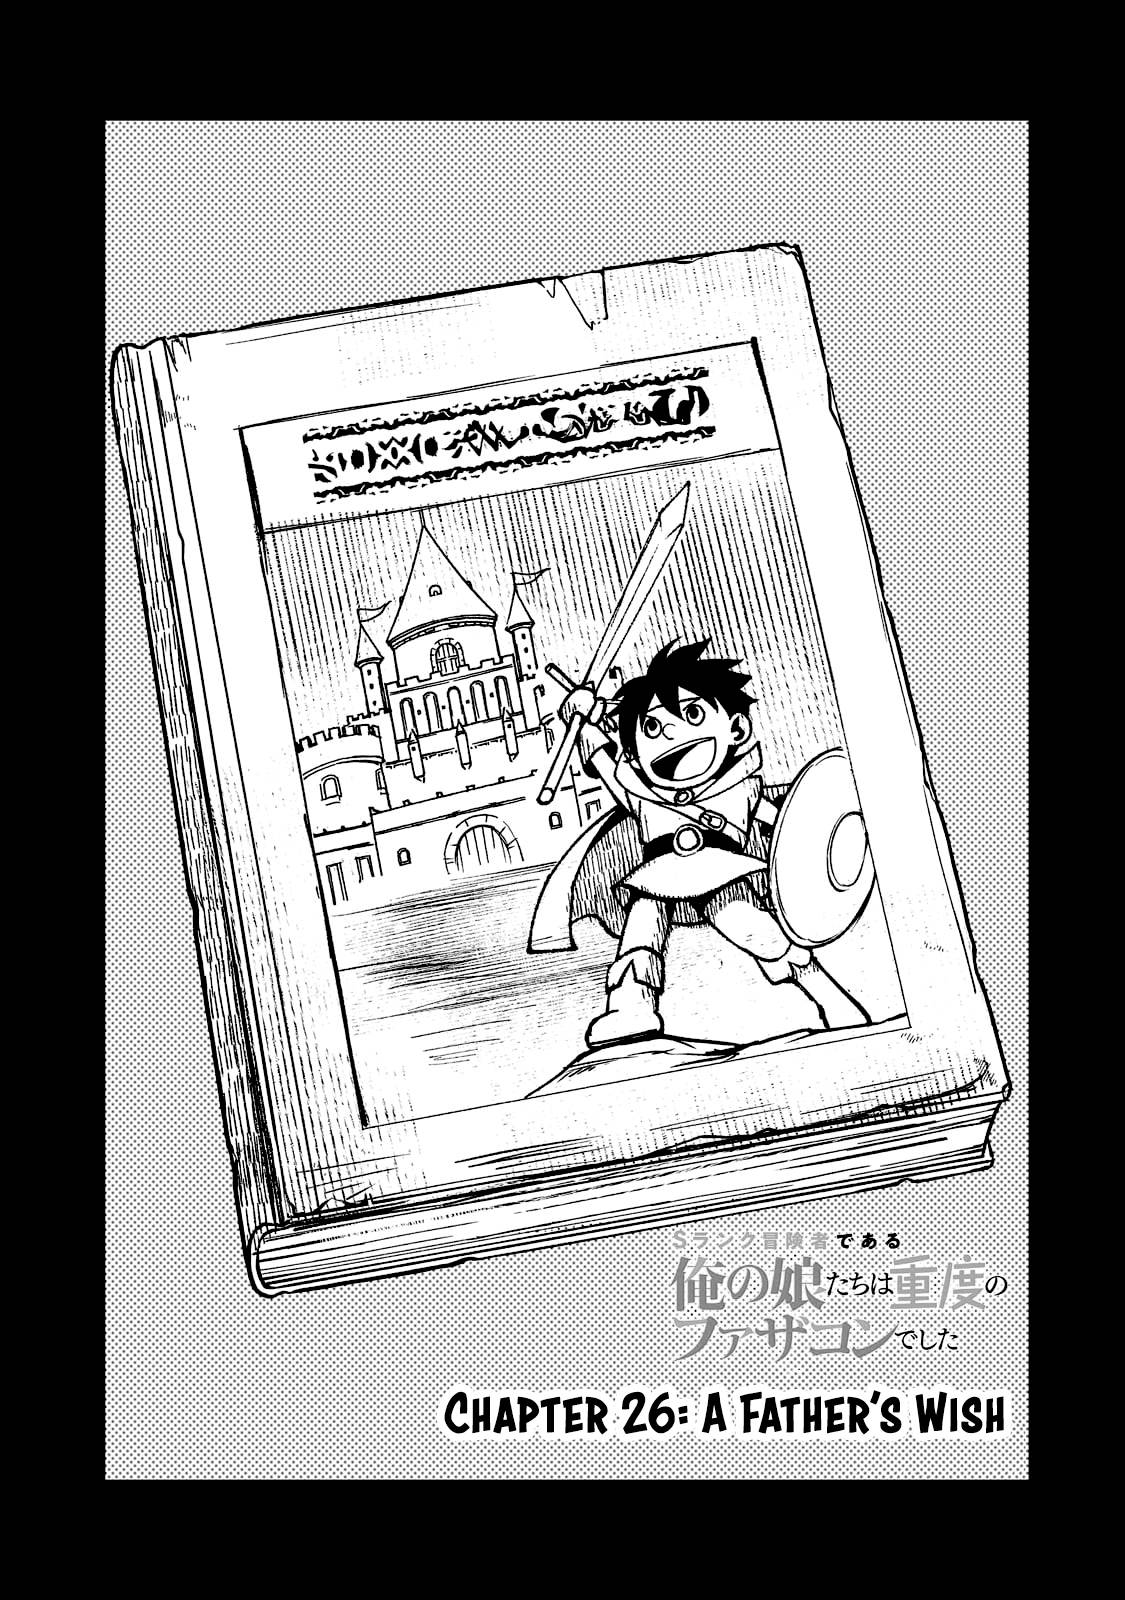 S Rank Boukensha de aru Ore no Musume-tachi wa Juudo no Father Con deshita  Manga - Read Manga Online Free